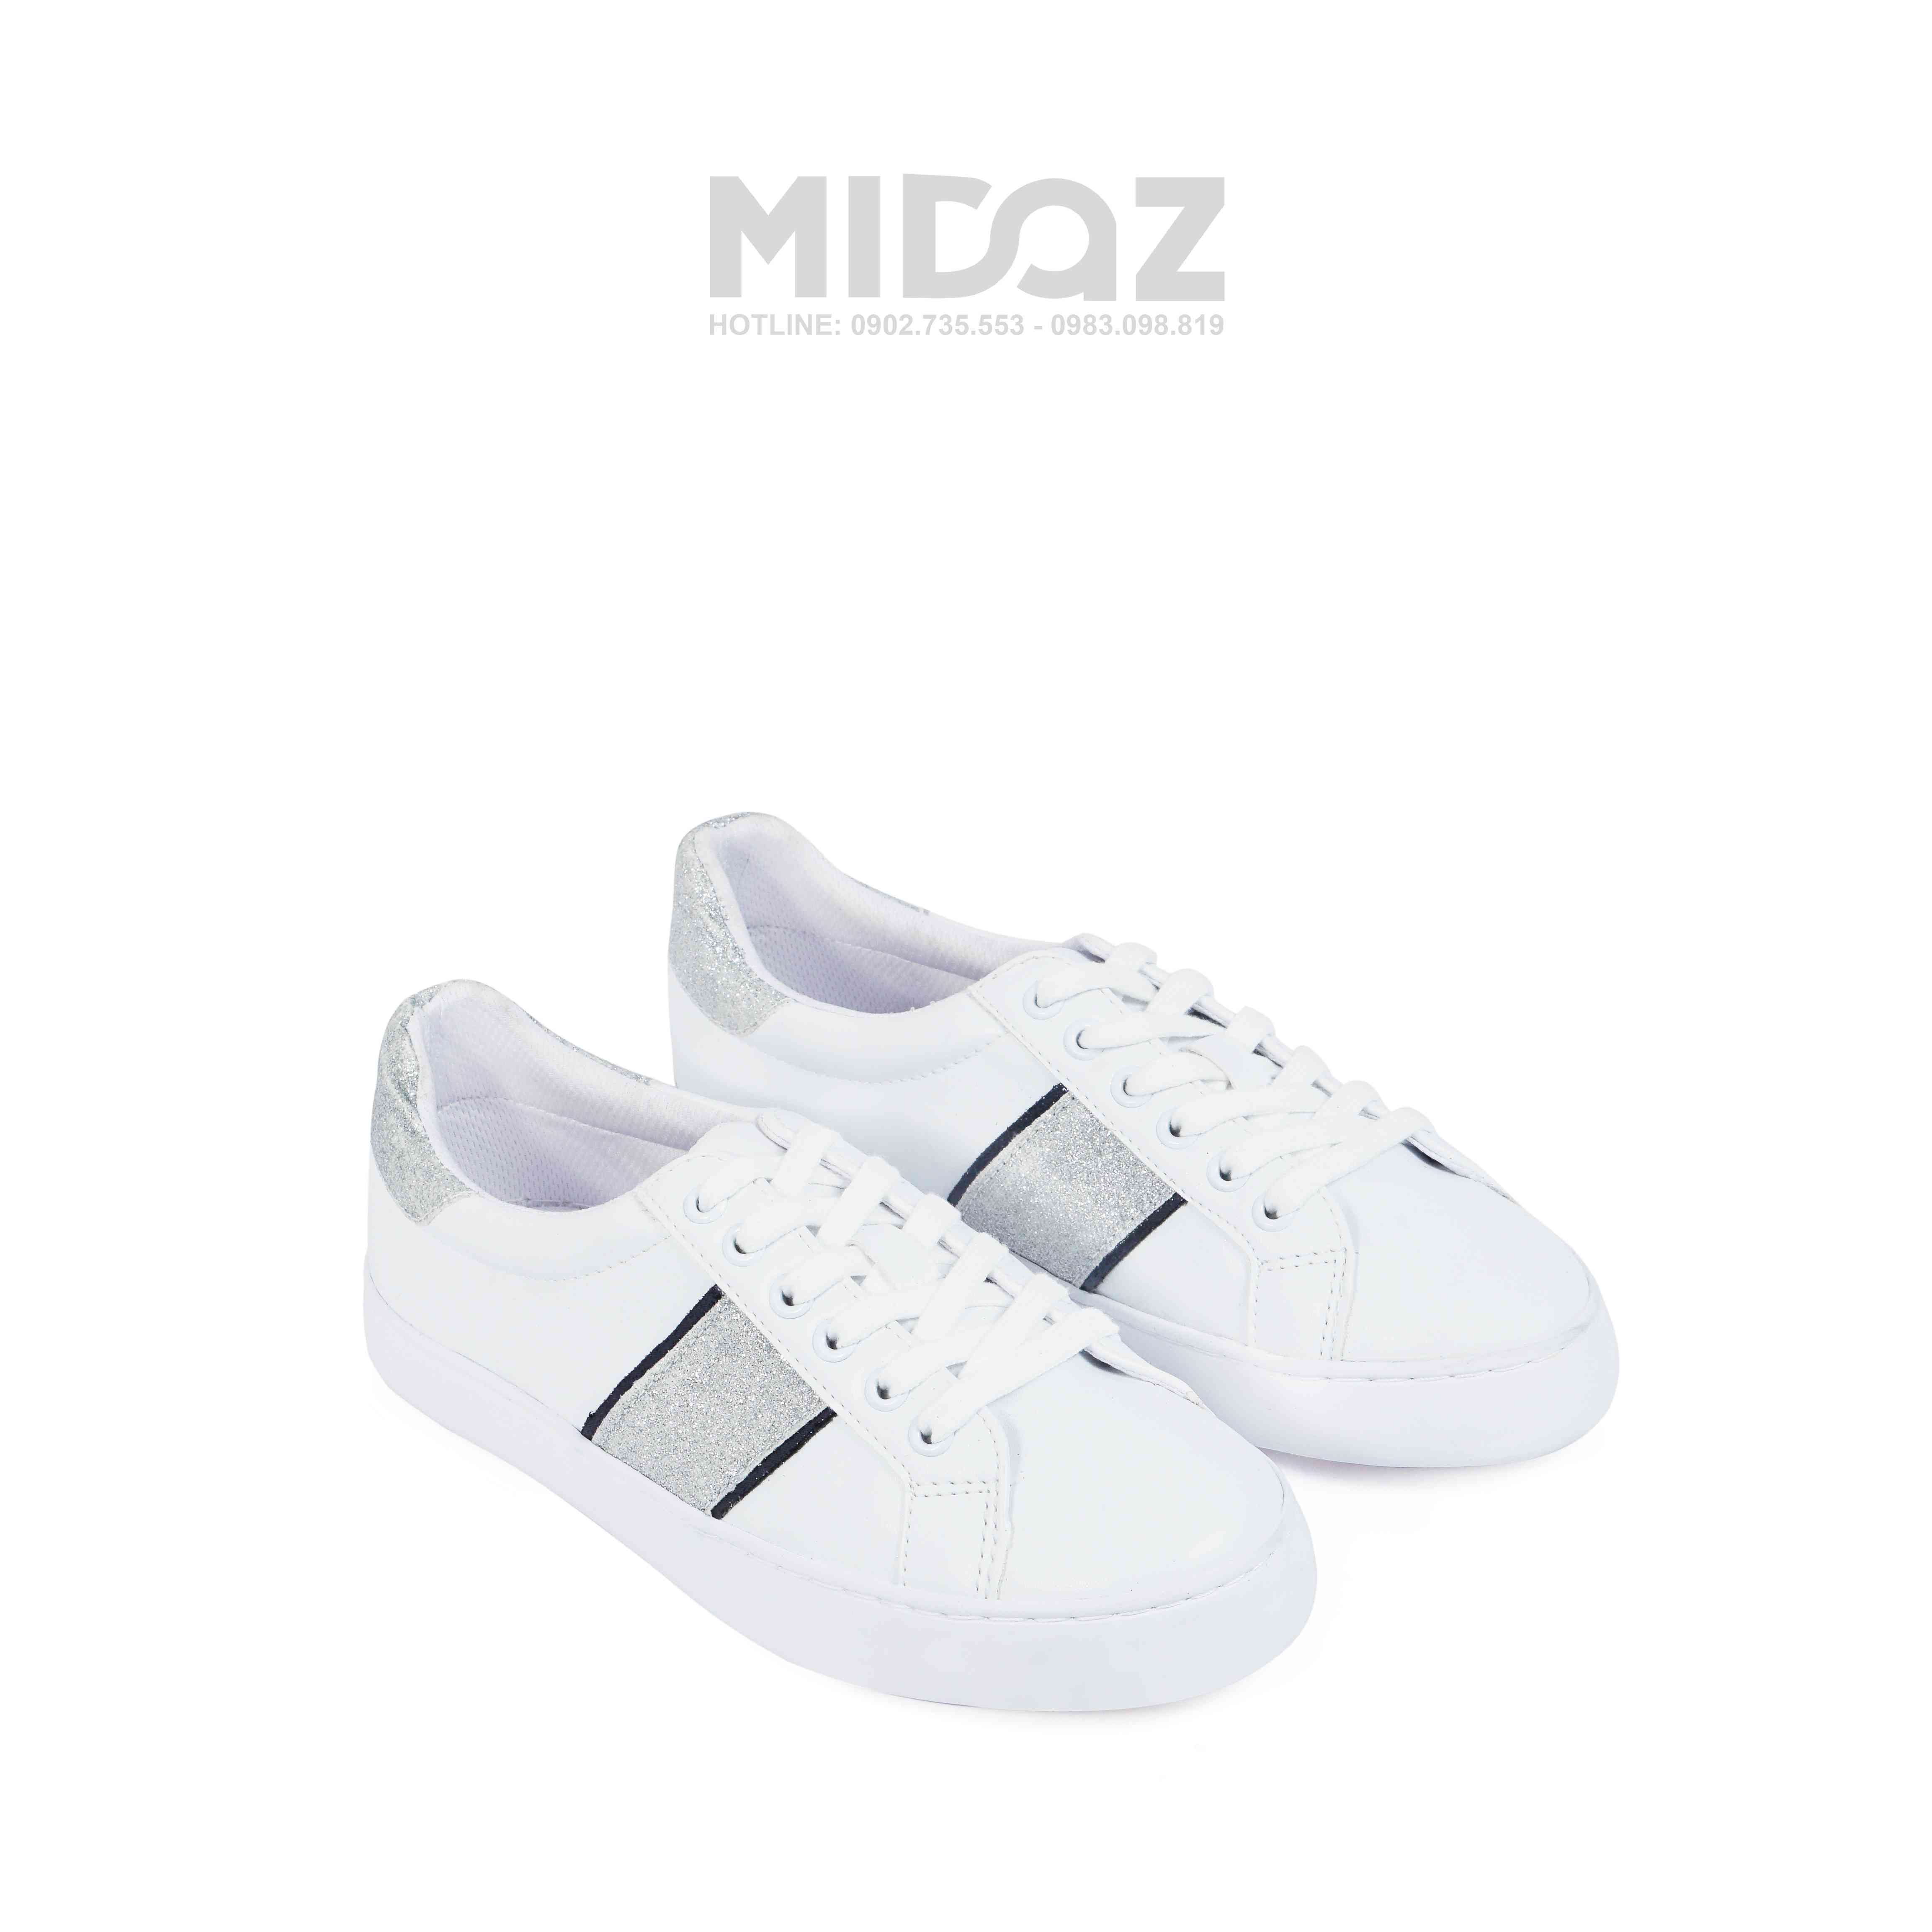 Midaz- BST mới nhất của thương hiệu hàng đầu về sneaker. 12